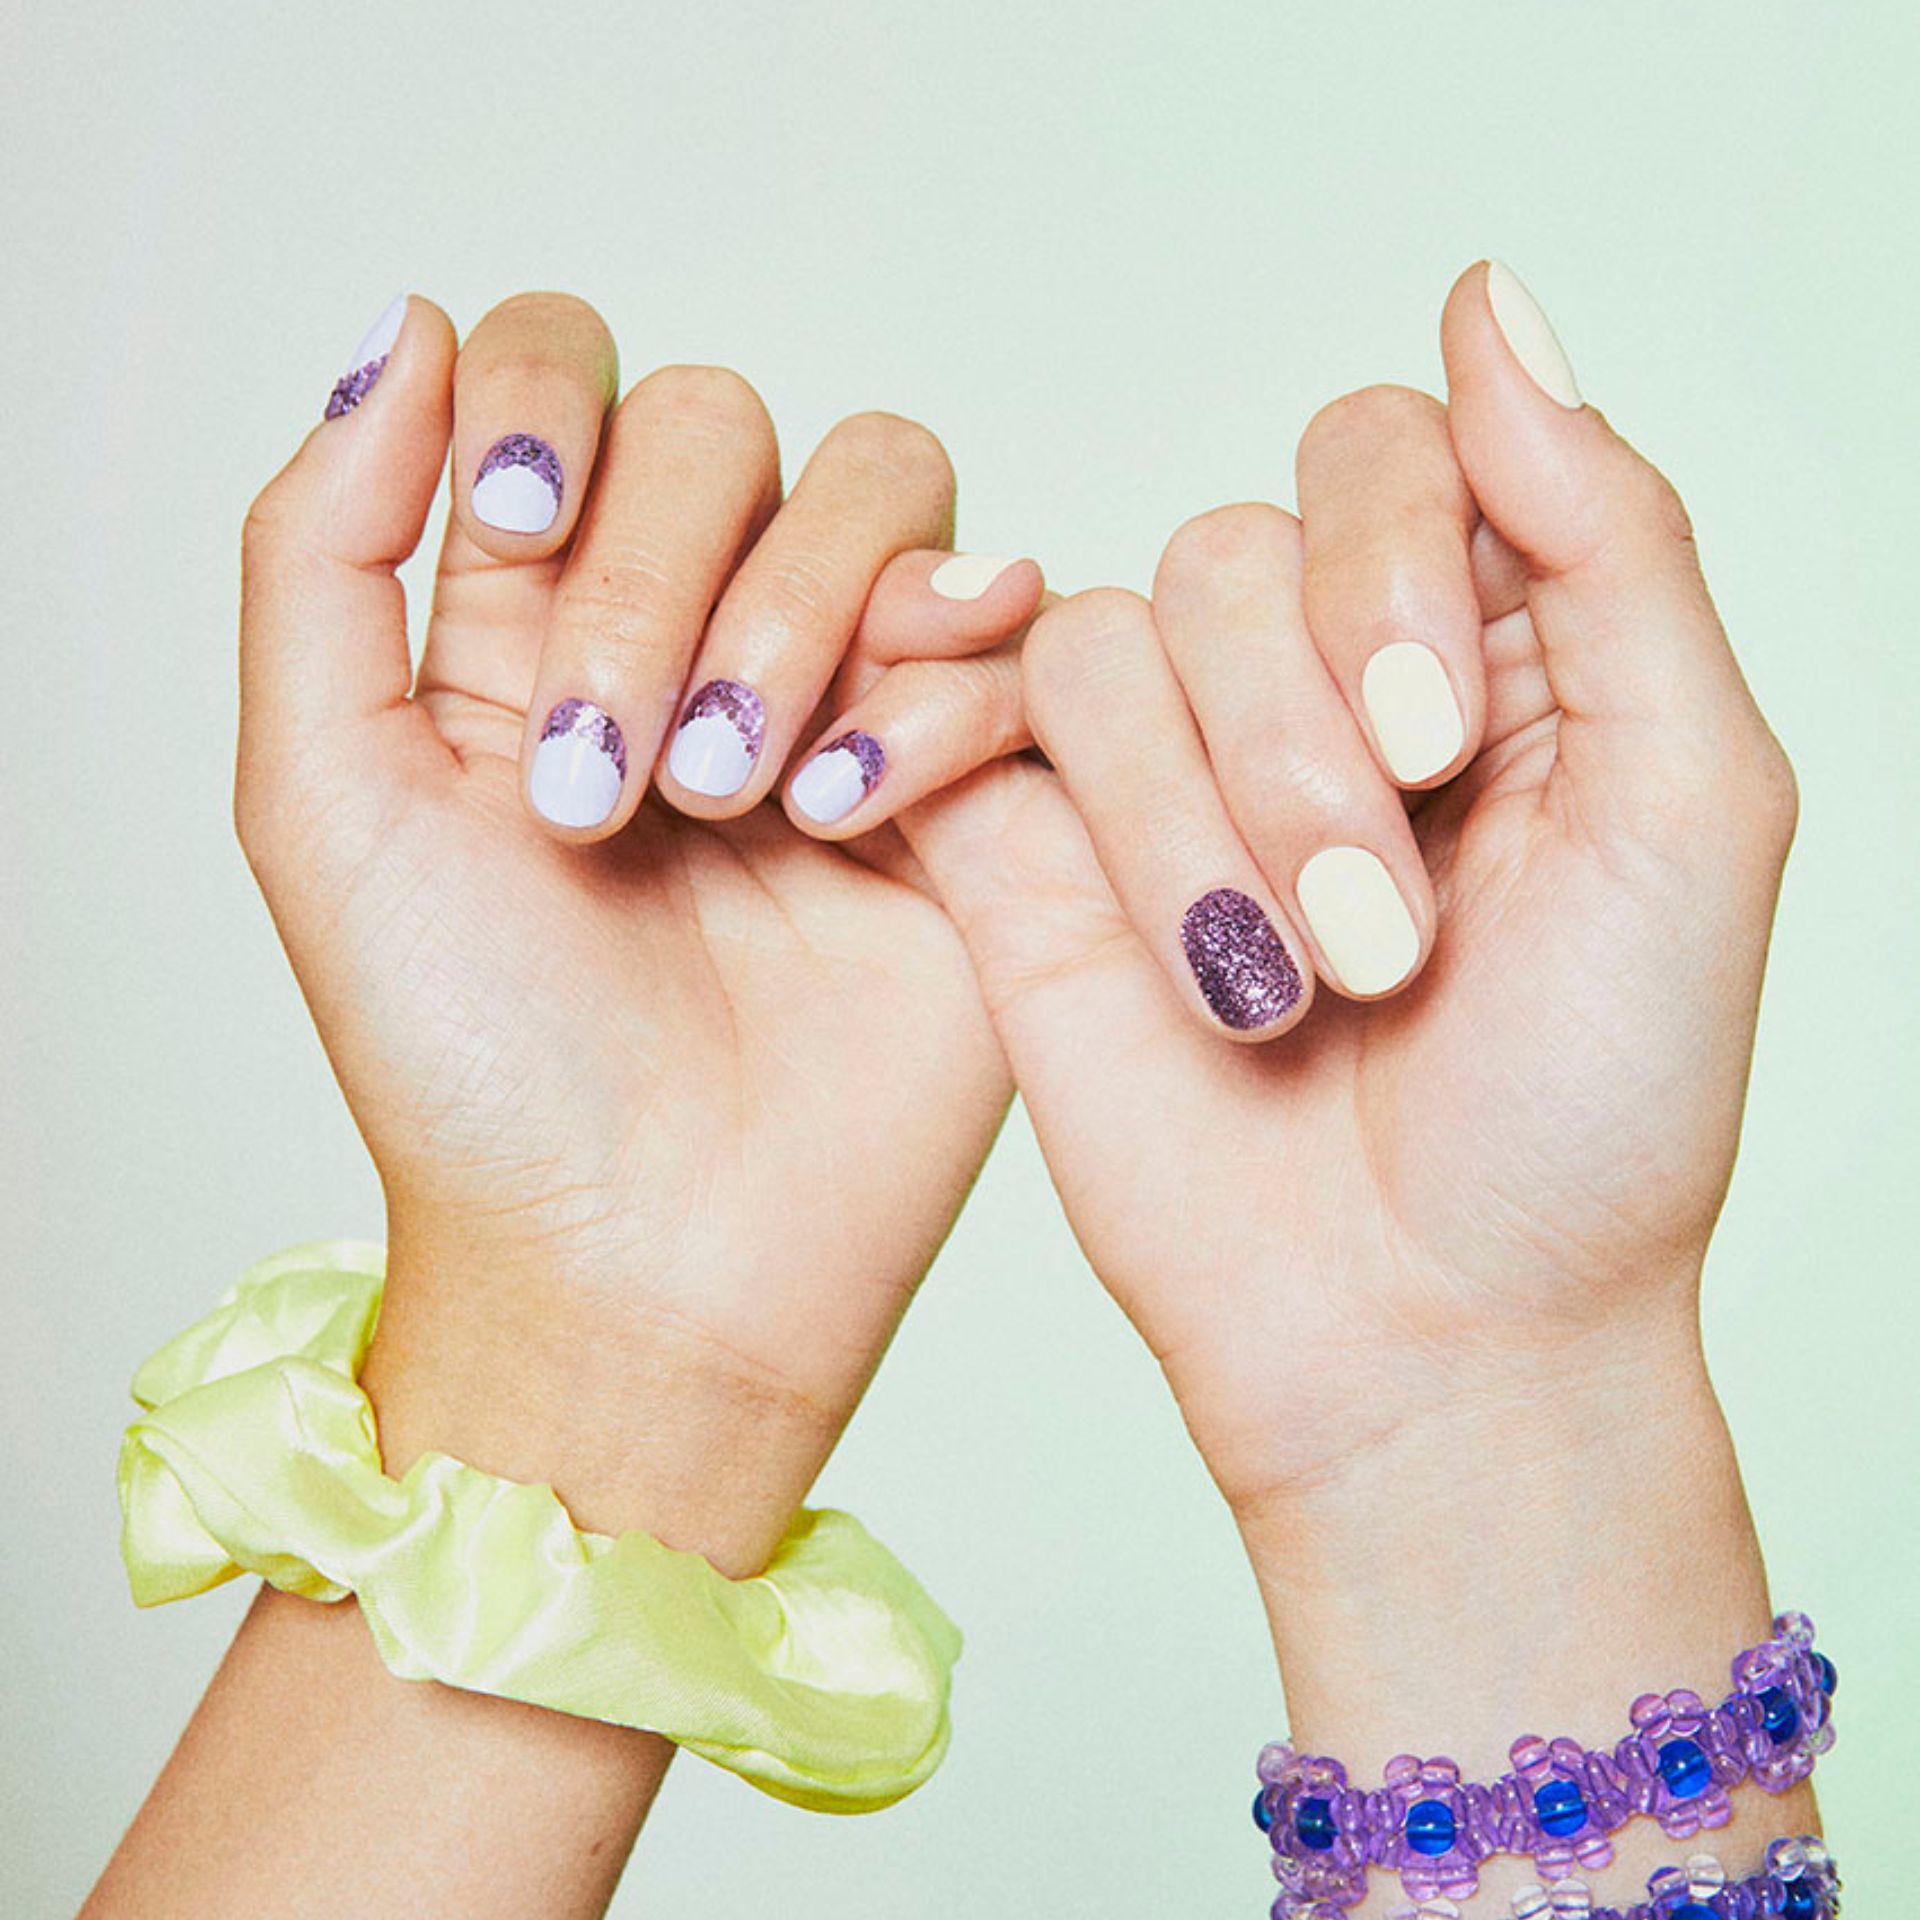 Manucure paillettes avec vernis jaune pastel et petites paillettes violettes